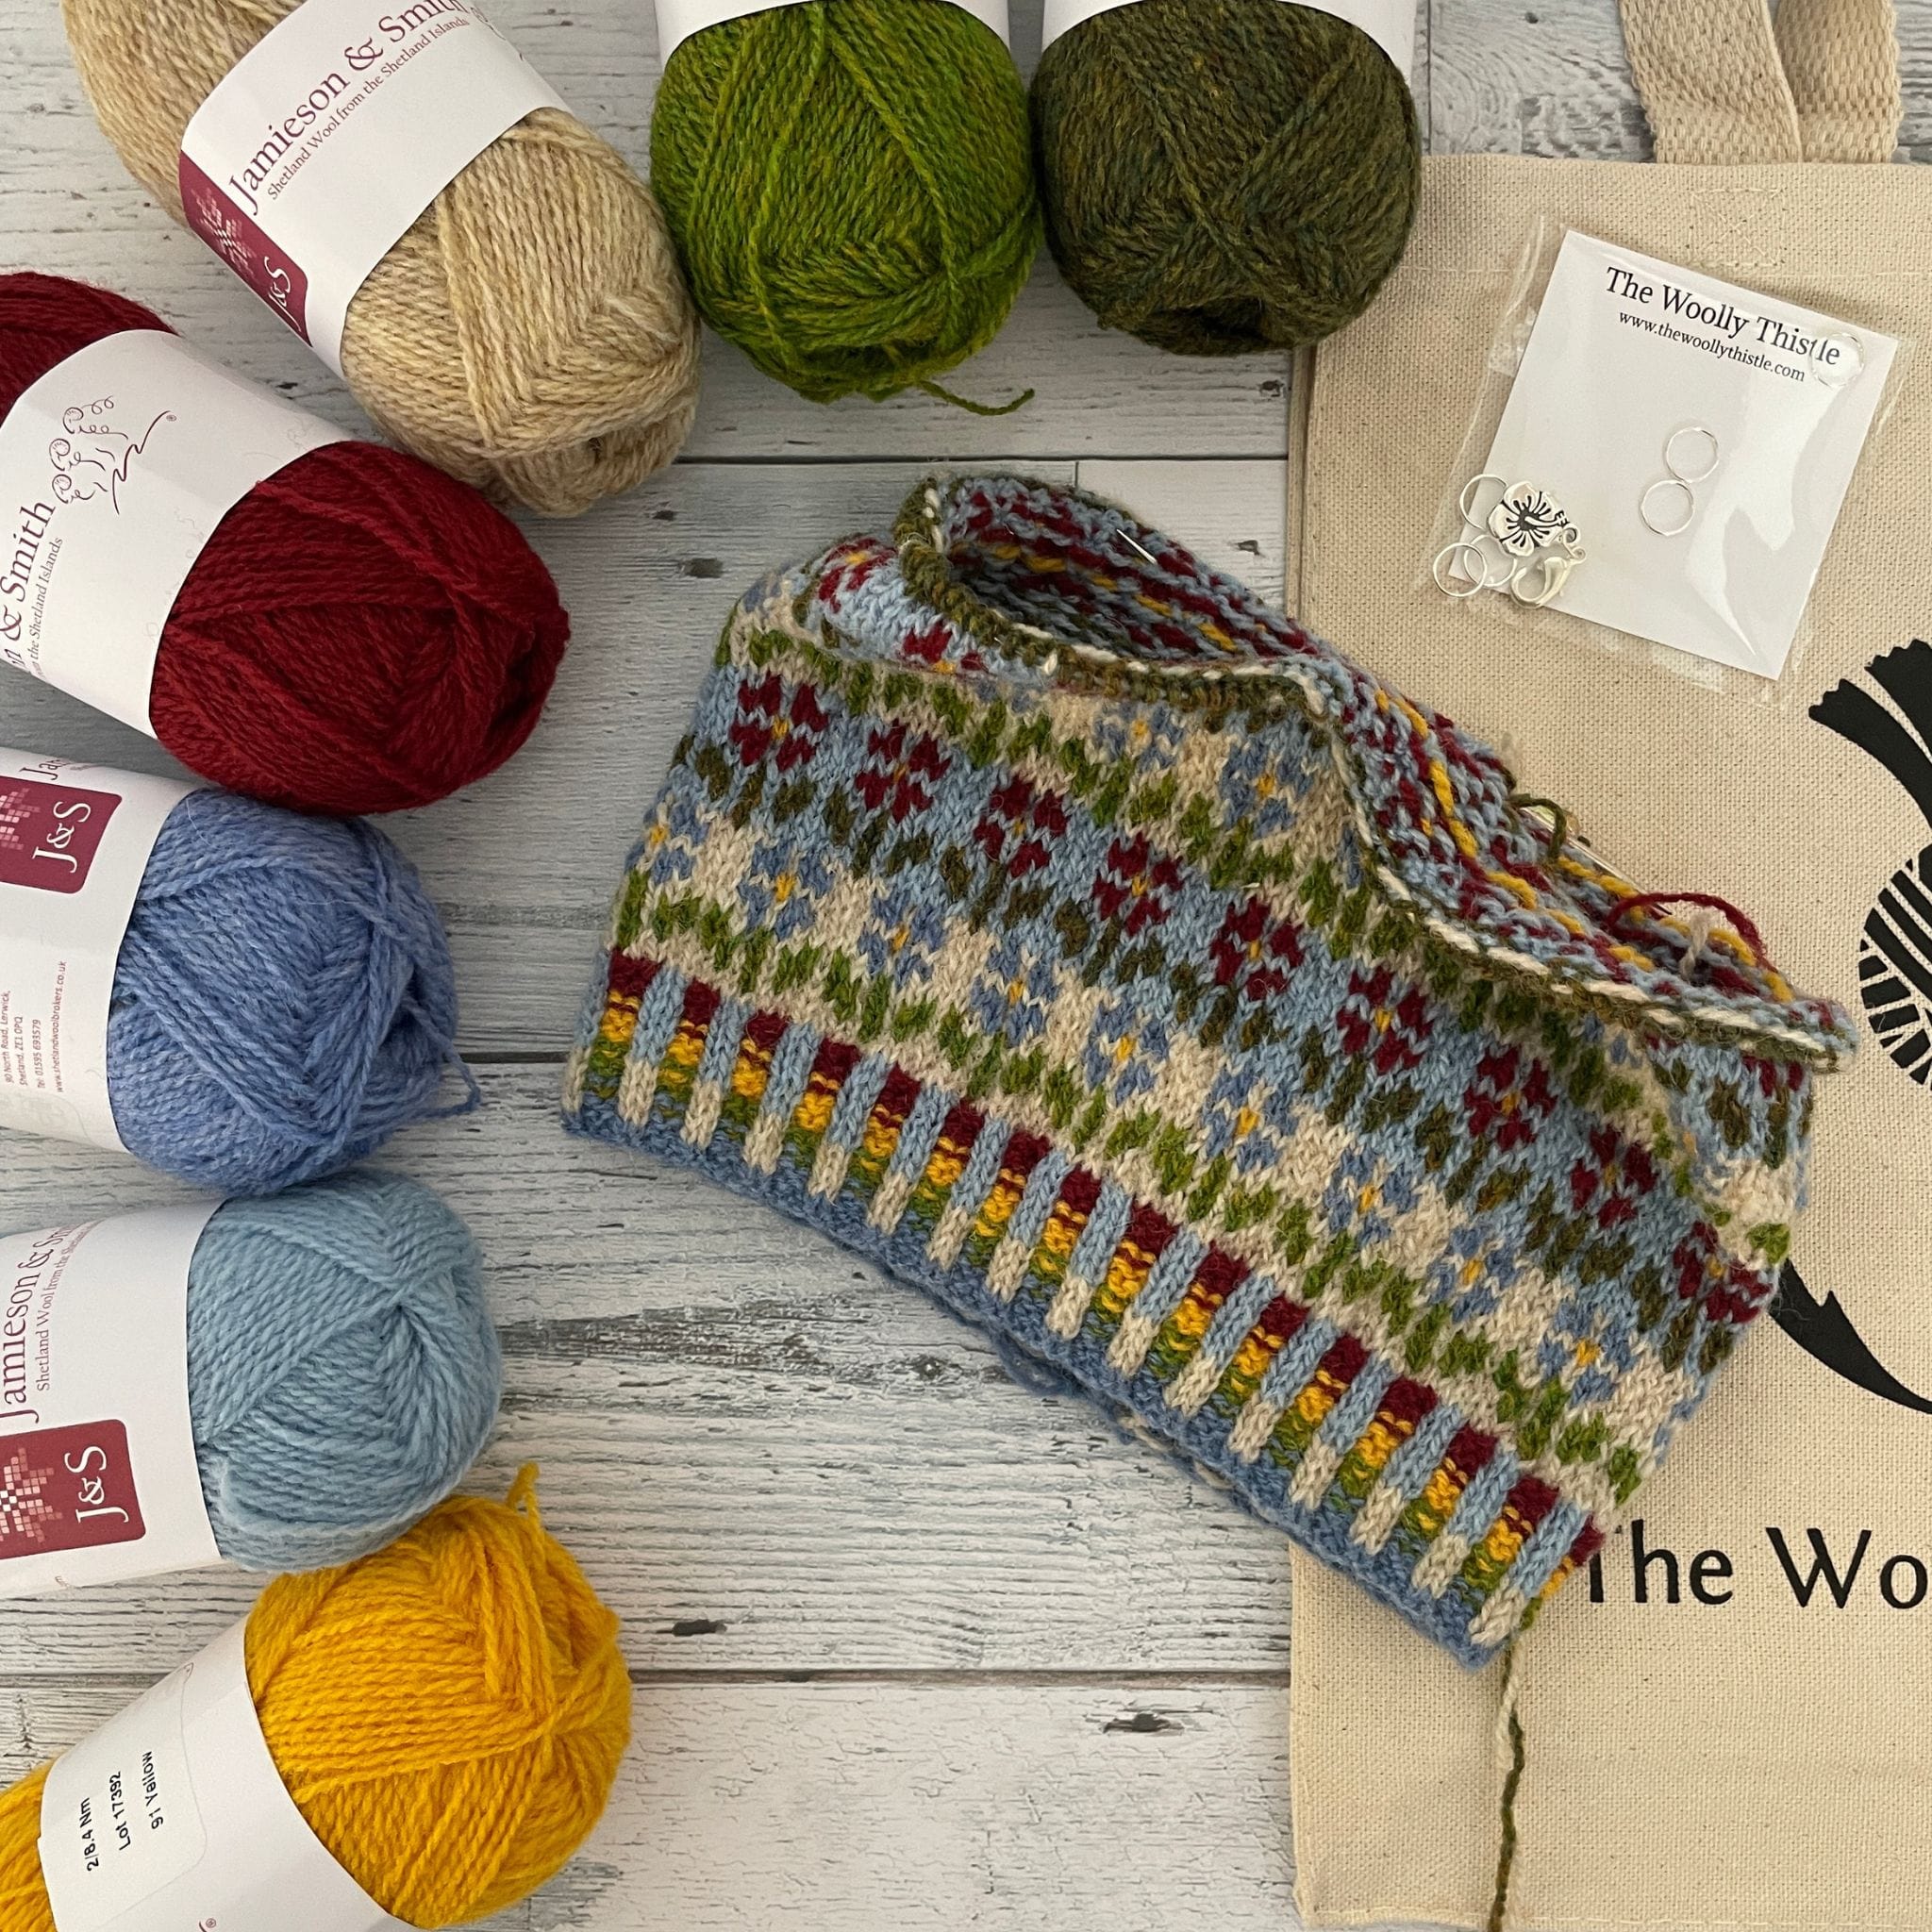 MKAL Yarn Sets - Knitting Notions